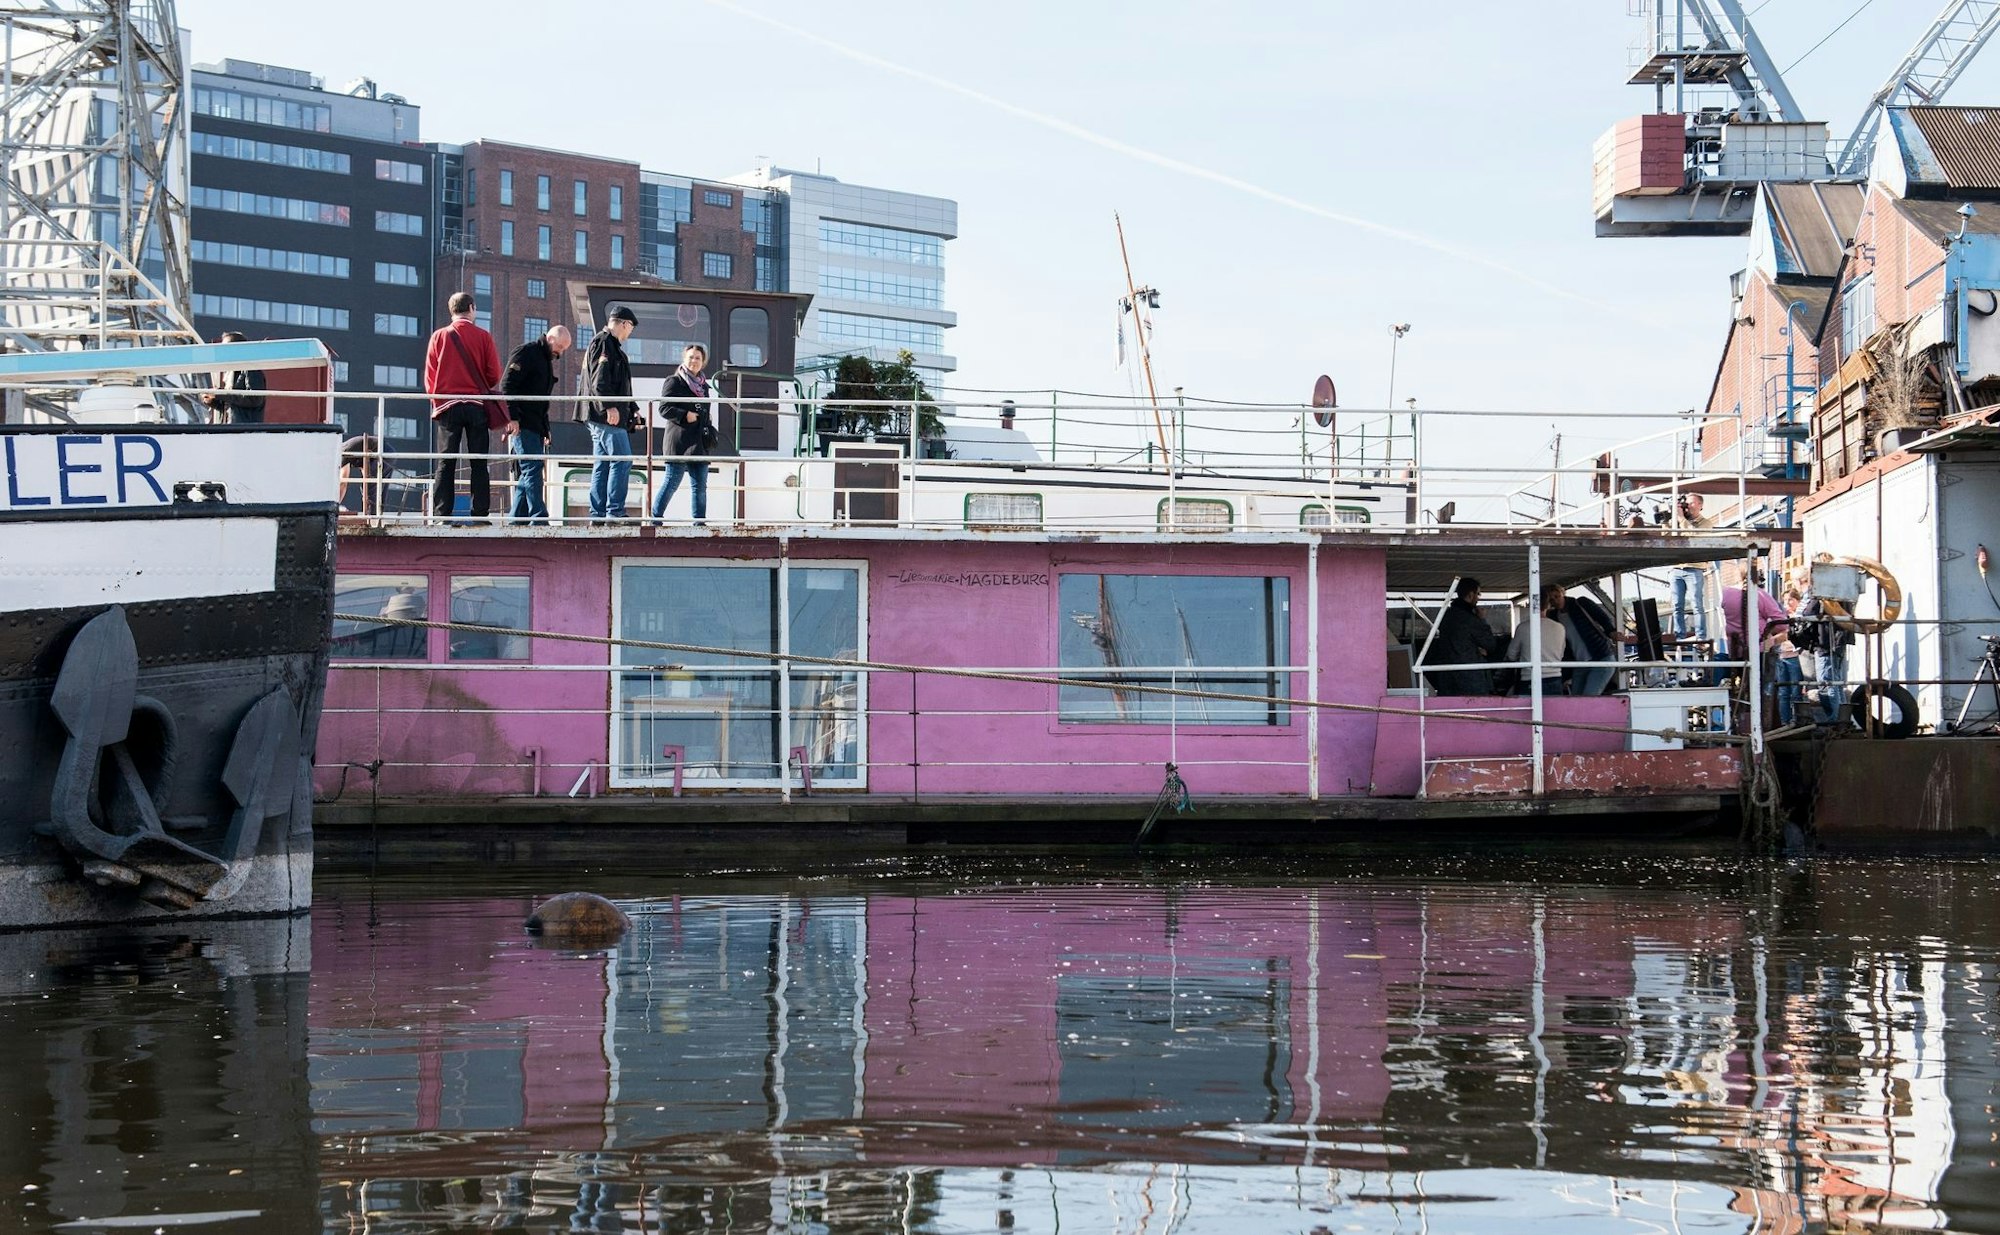 Das Hausboot von Schlagersänger Olli Schulz und Fynn Kliemann wechselt den Besitzer.